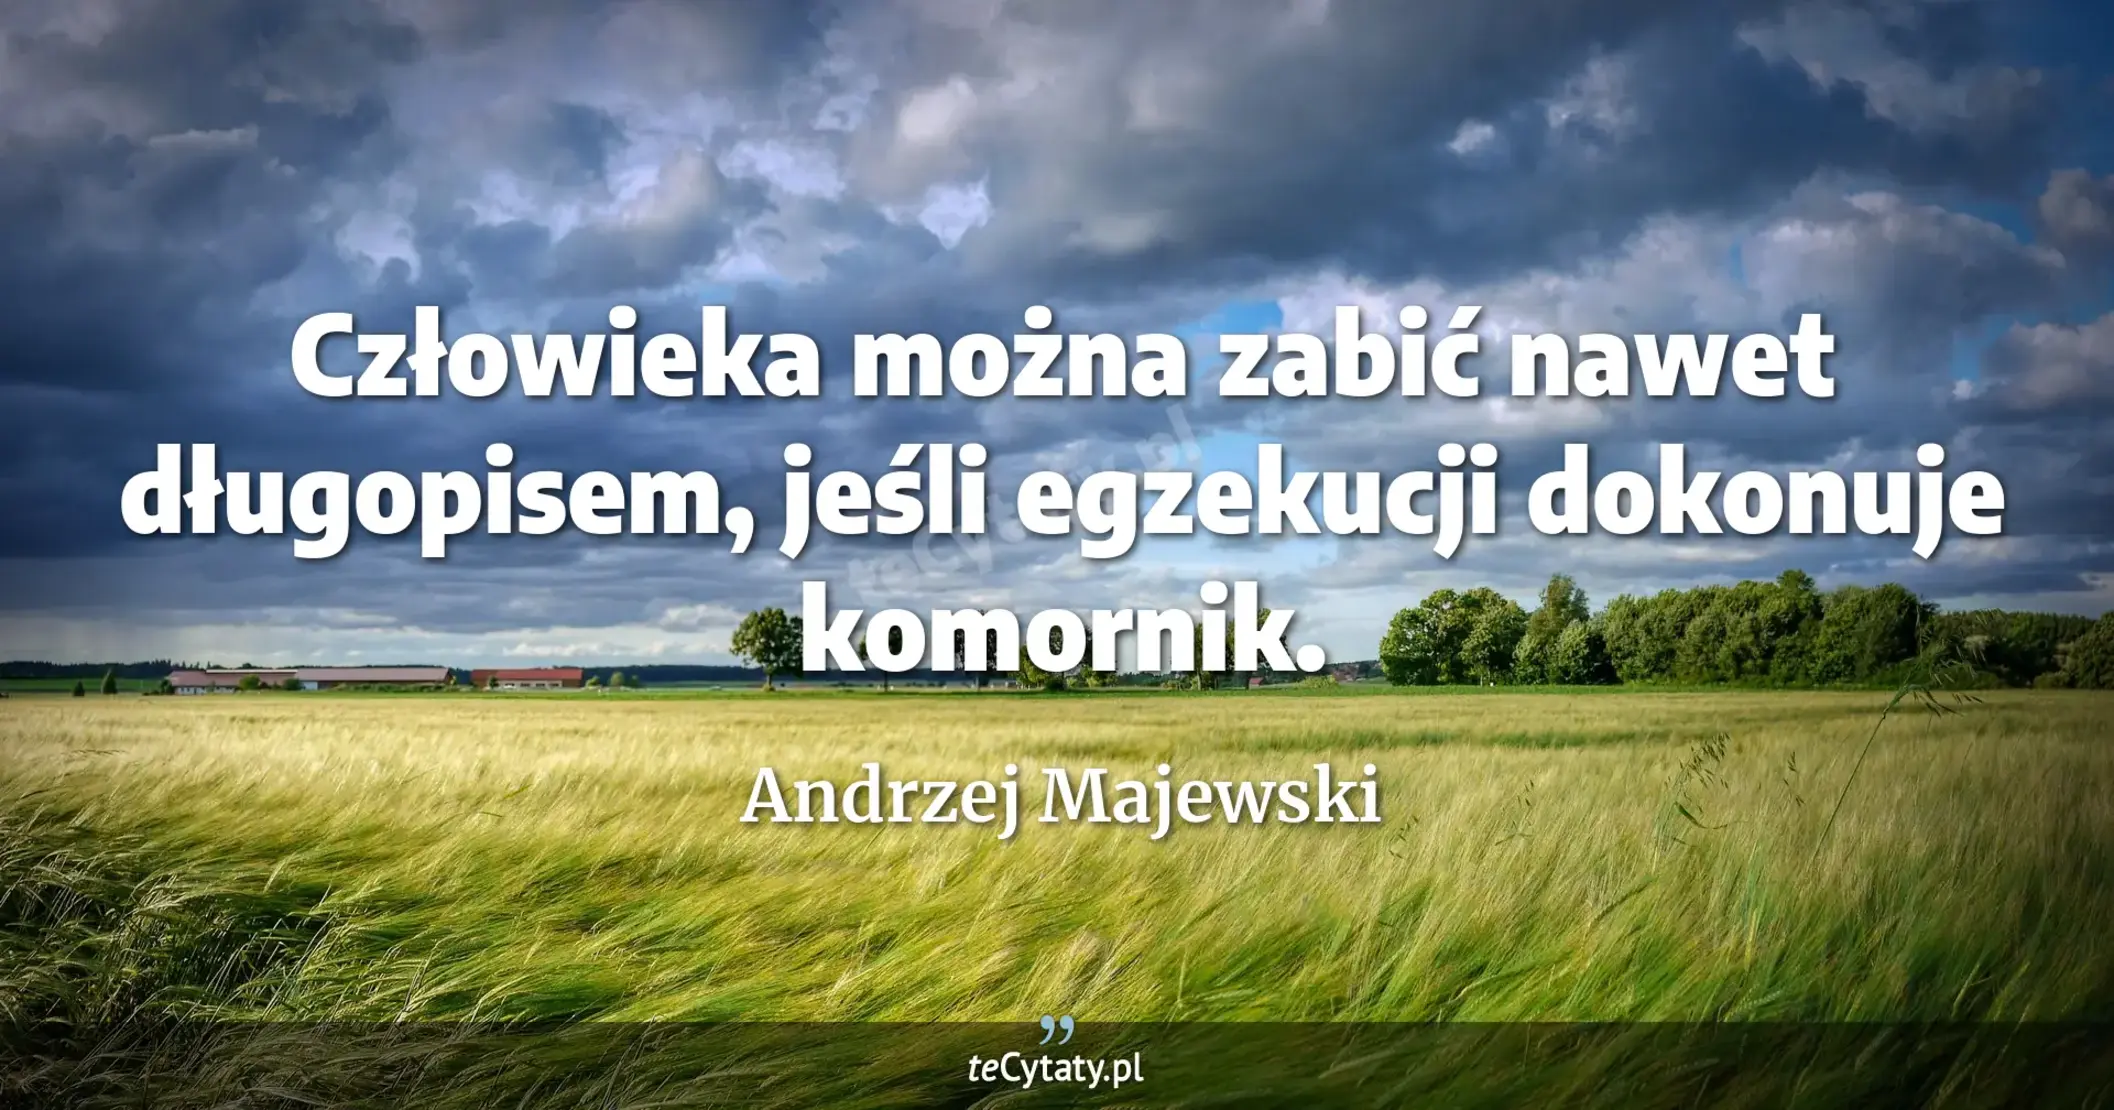 Człowieka można zabić nawet długopisem, jeśli egzekucji dokonuje komornik. - Andrzej Majewski